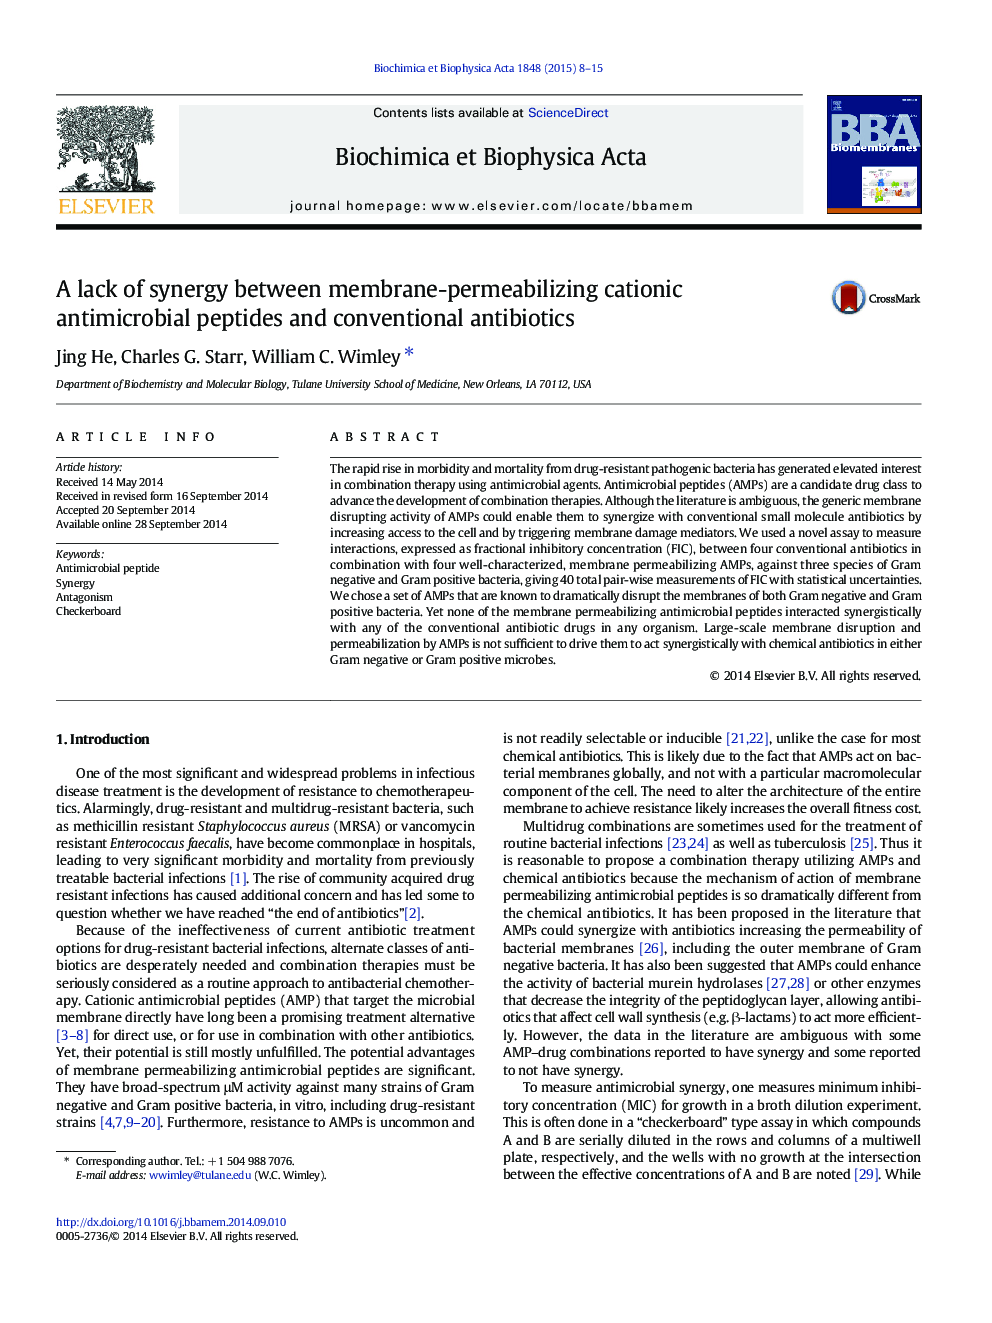 فقدان همکاری بین پپتیدهای ضد میکروبی غشاء و نفوذپذیری کاتیونی و آنتی بیوتیکهای معمول 